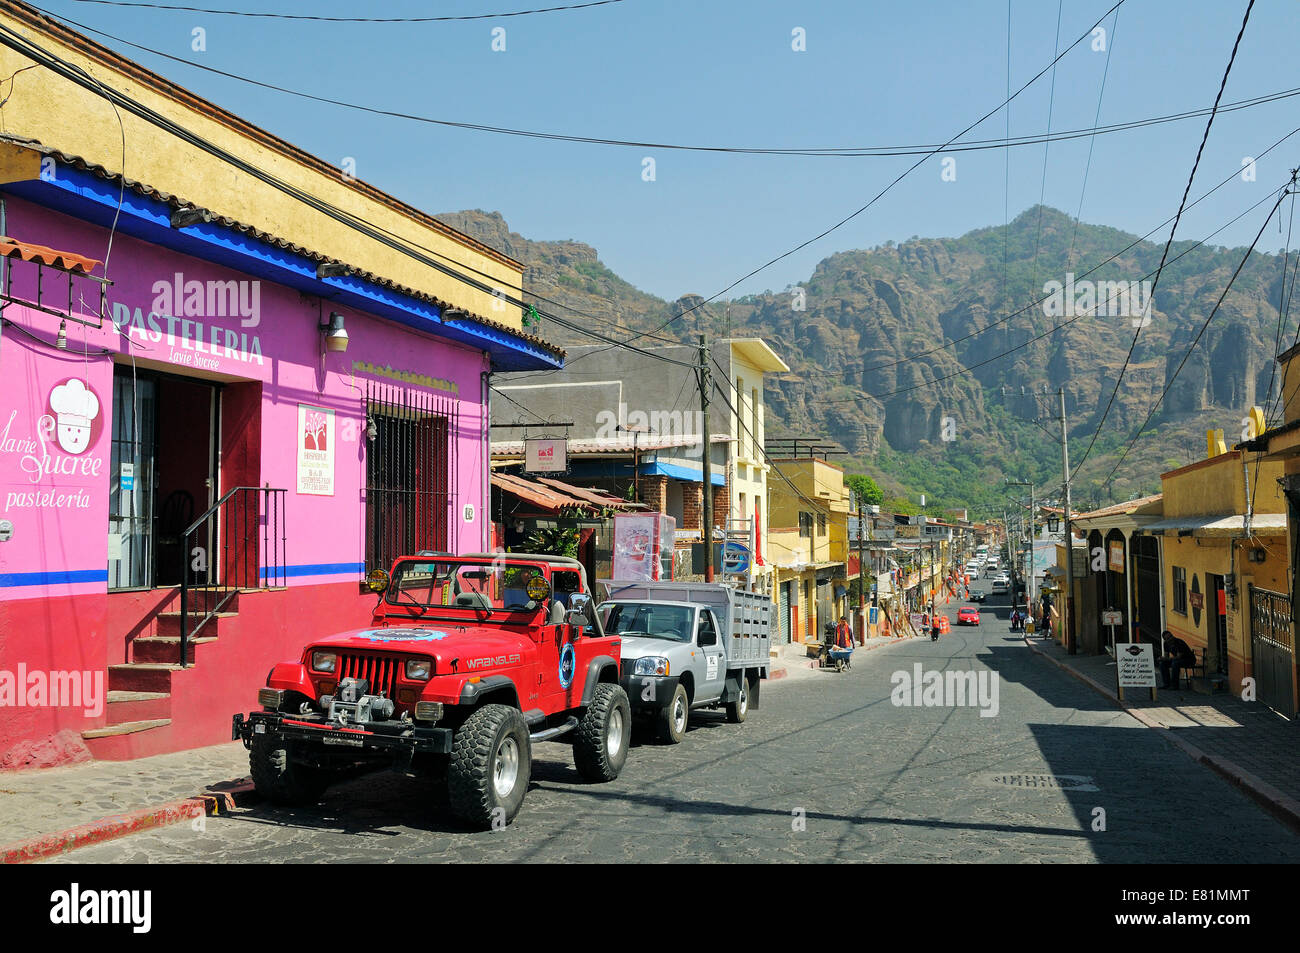 Casa colorati nella strada principale di una piccola cittadina, Tepoztlan, del Distretto Federale, Messico Foto Stock